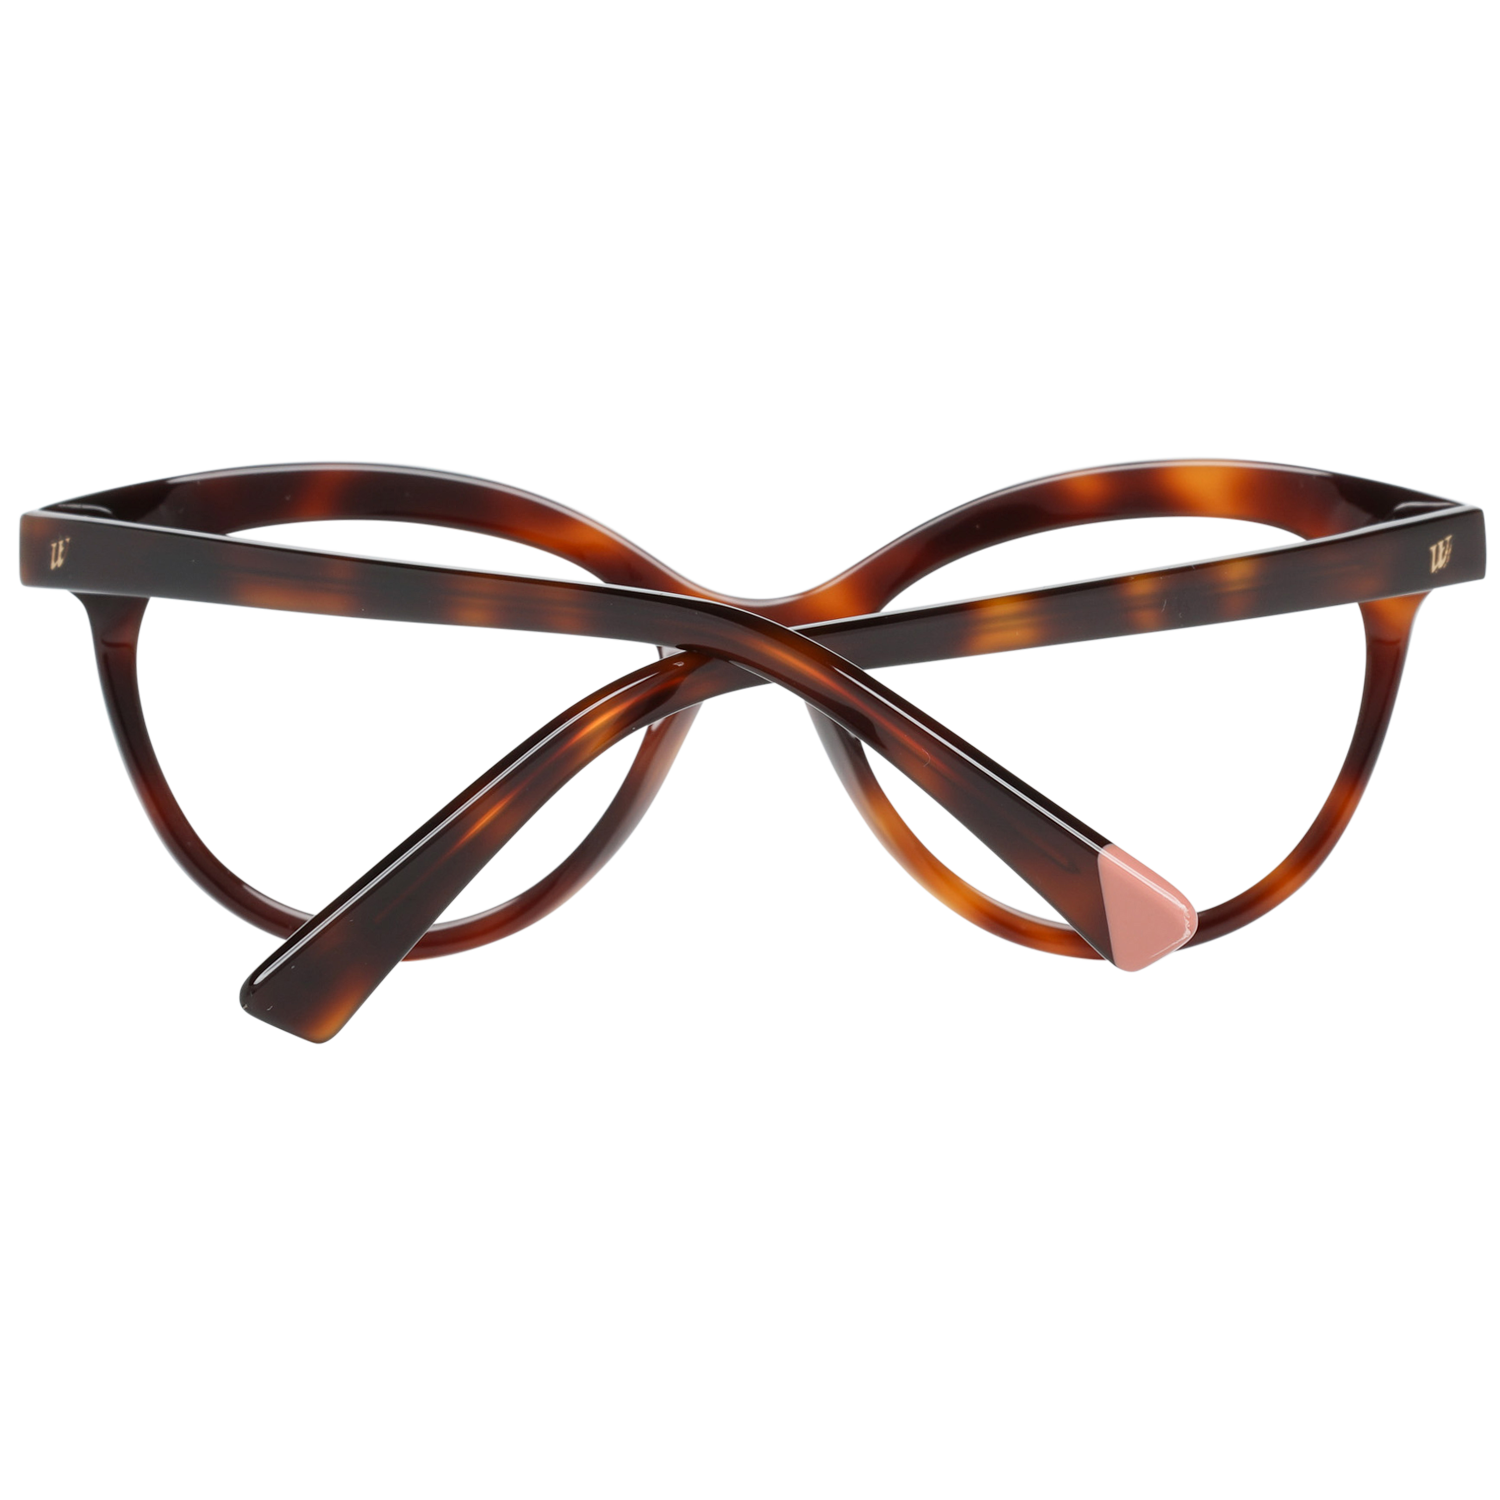 Web Frames Web Optical Frame WE5250 052 51 Eyeglasses Eyewear UK USA Australia 